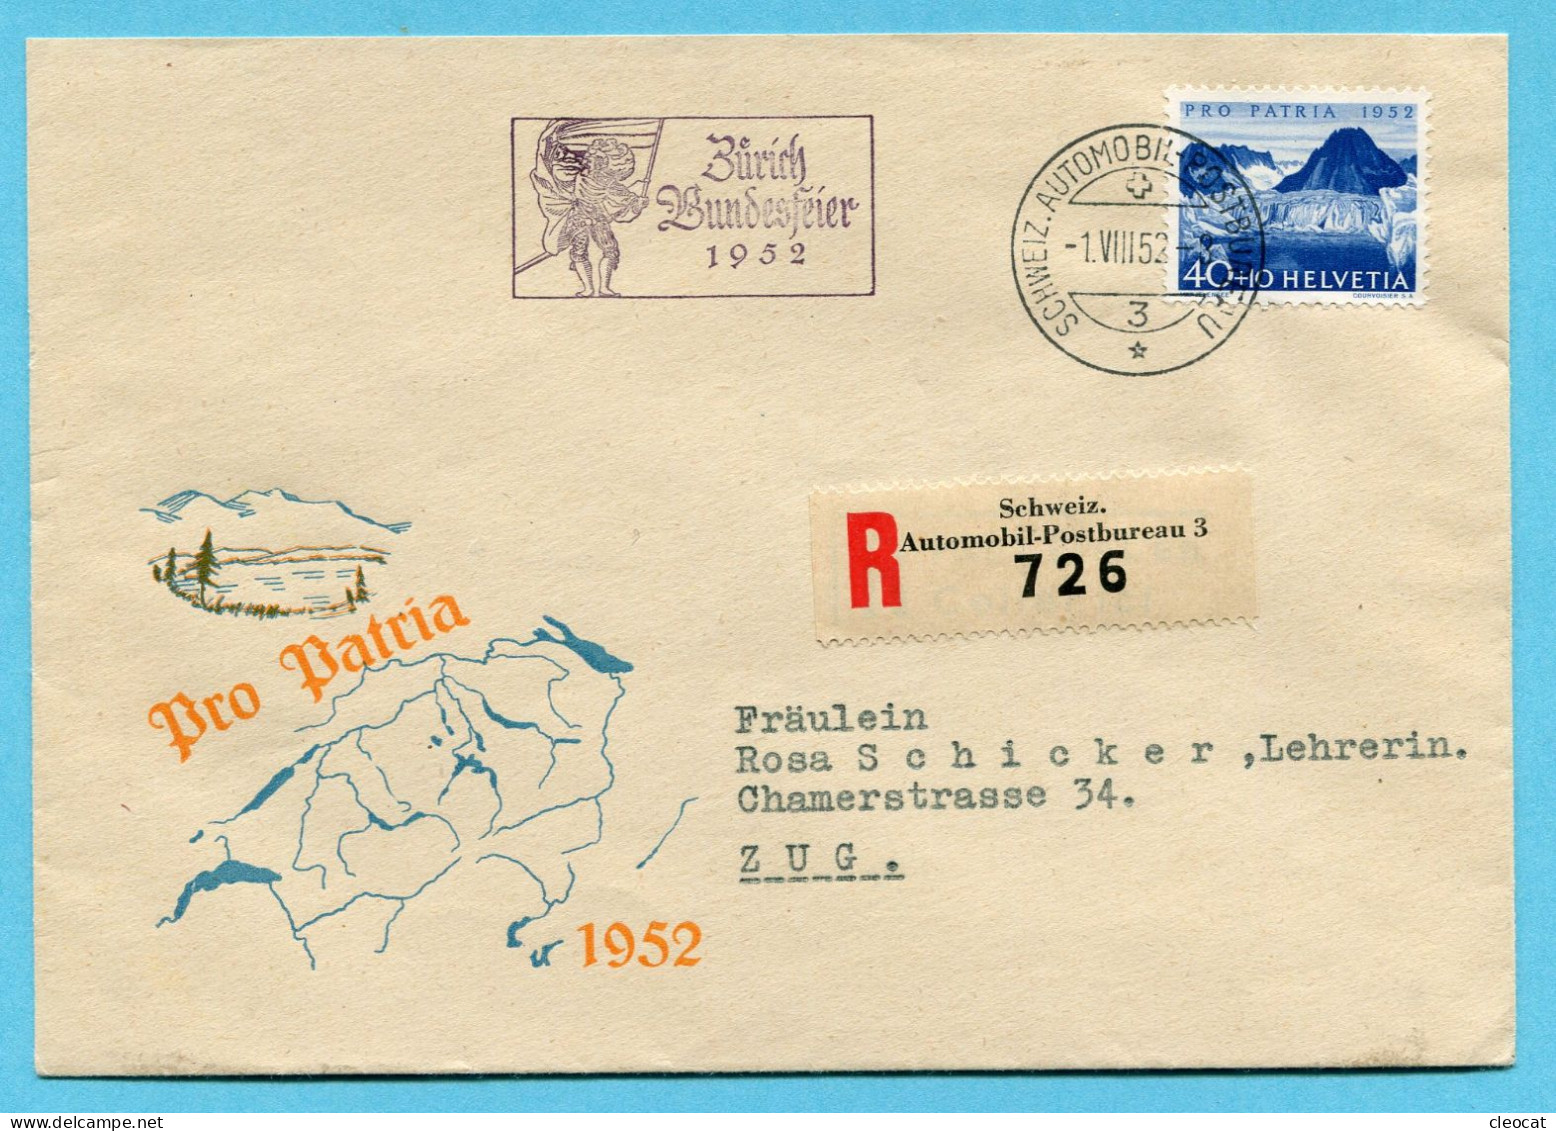 Brief Pro Patria - Gestempelt Zürich Bundesfeier 1952 Und Schweiz. Automobil-Postbureau 1.VIII.52 Auf P2 - Briefe U. Dokumente